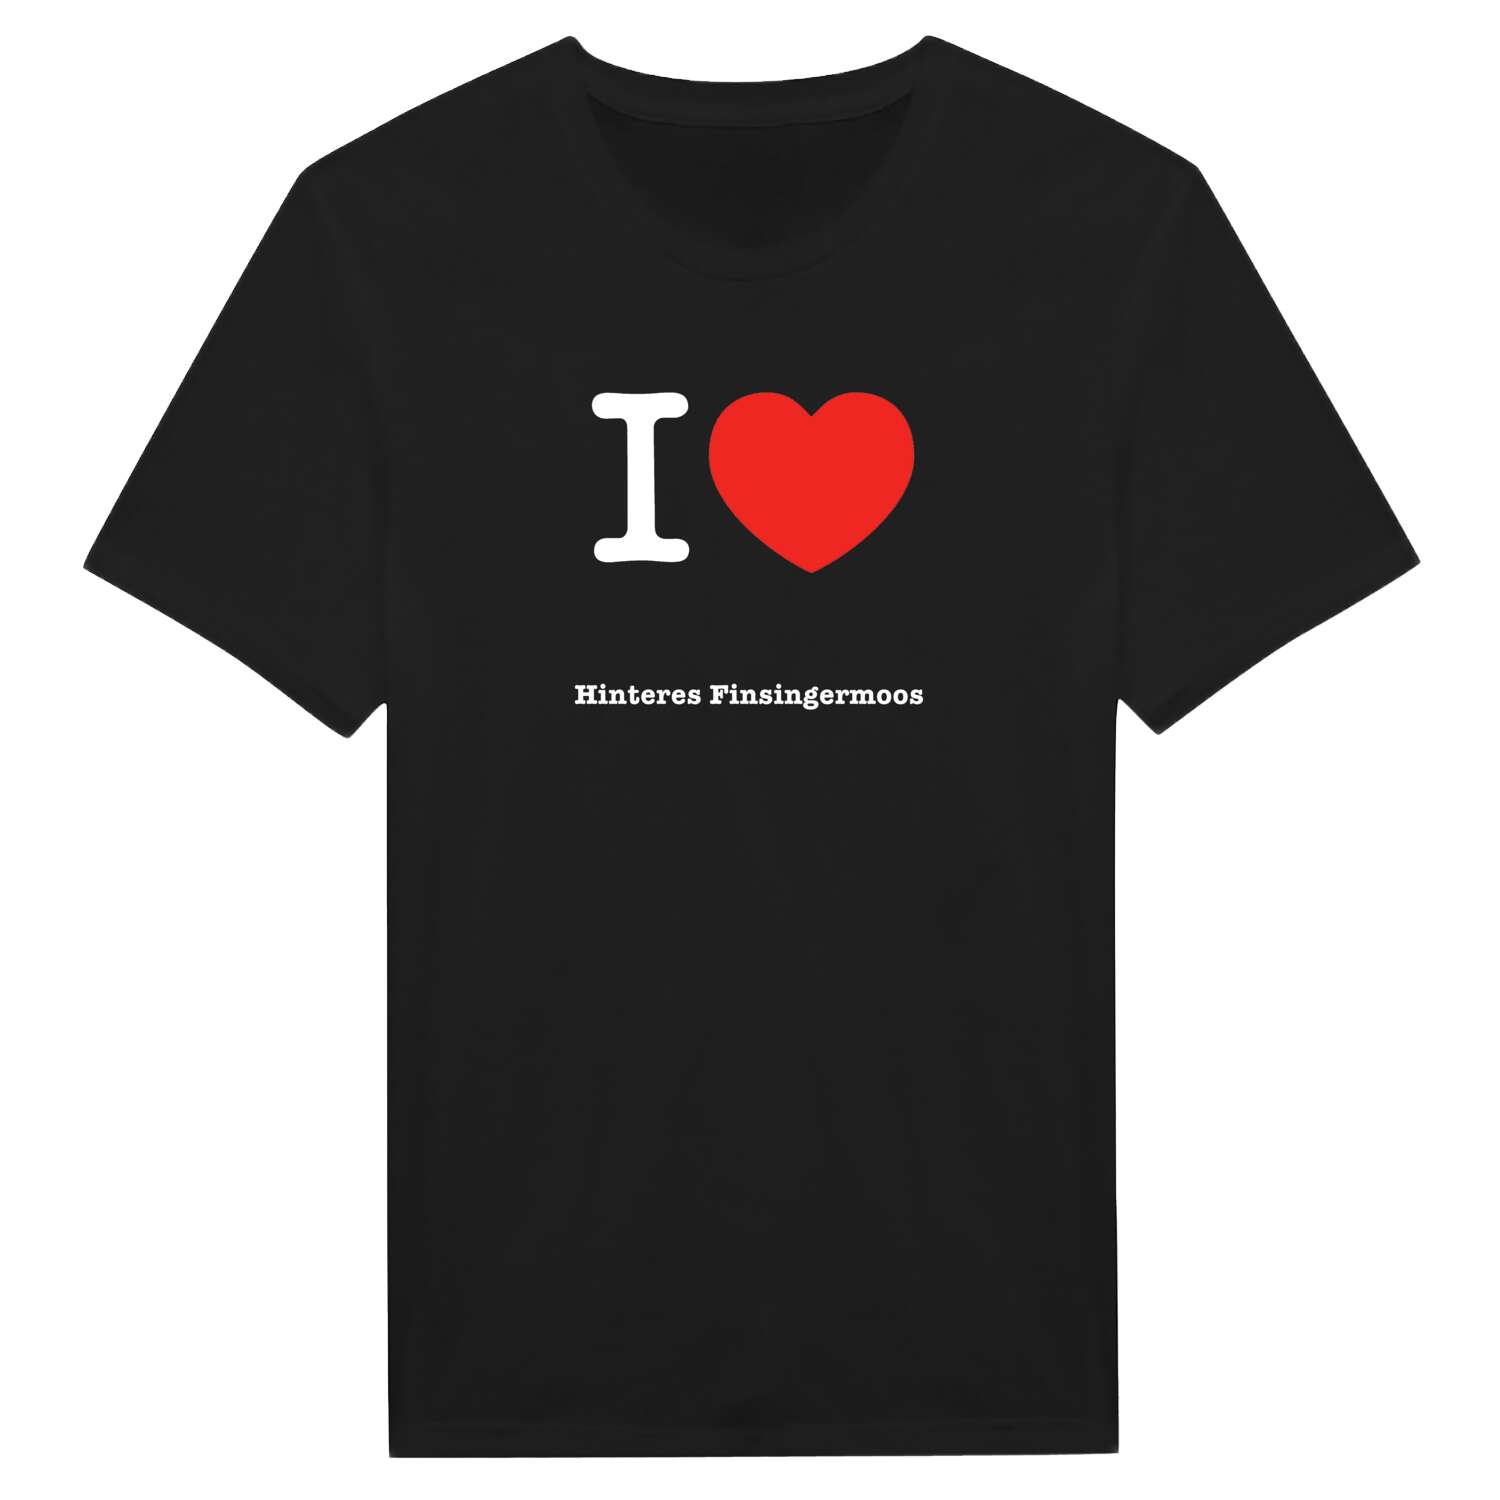 Hinteres Finsingermoos T-Shirt »I love«